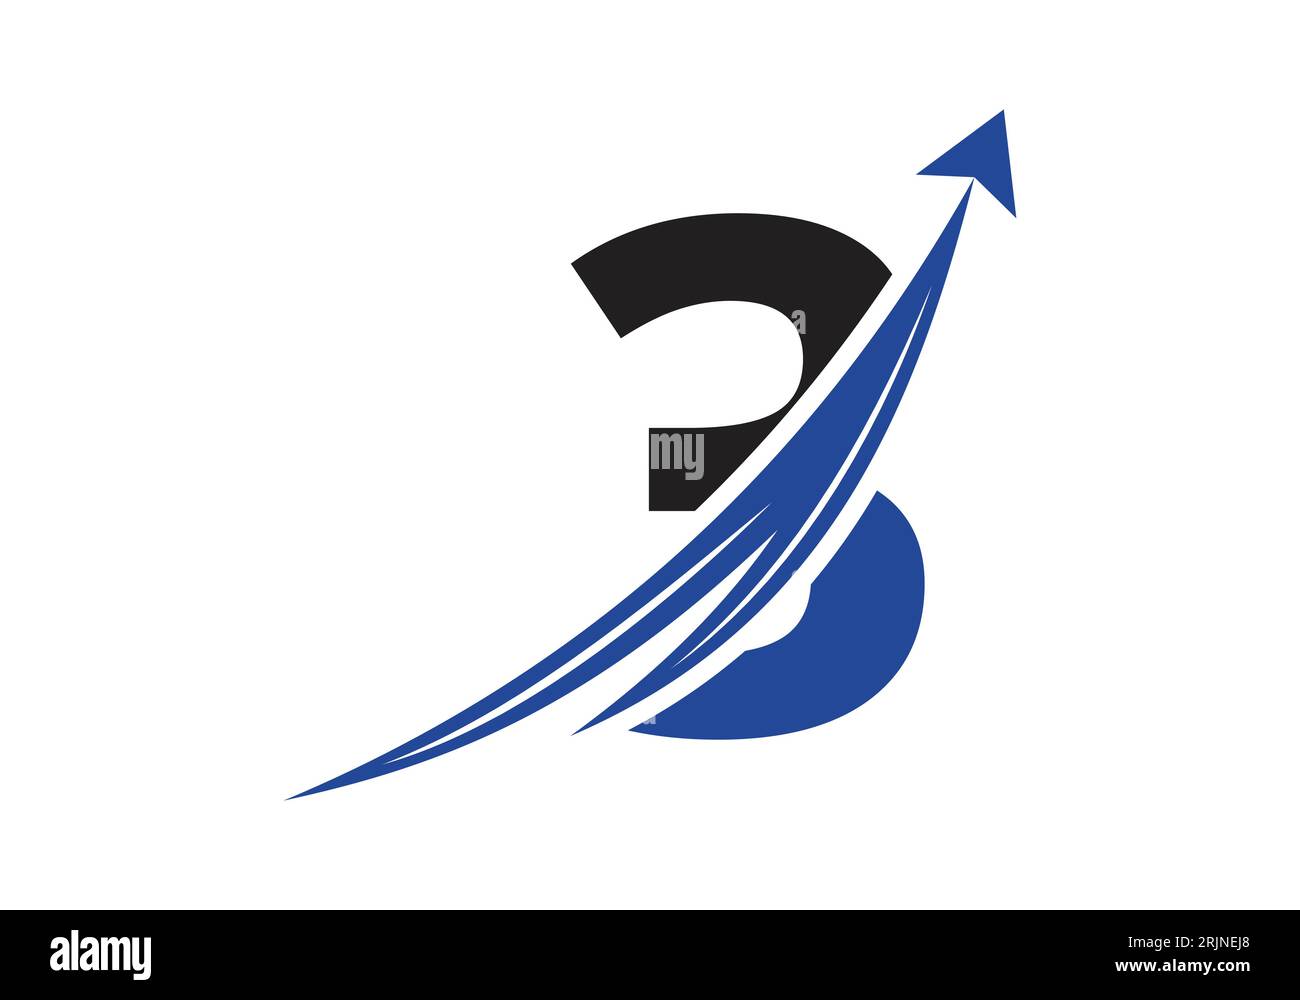 Finance-Logo Mit 3 Buchstaben-Konzept. Konzept für Finanz- oder Erfolgslogo. Logo für die Geschäfts- und Unternehmensidentität der Buchhaltung Stock Vektor